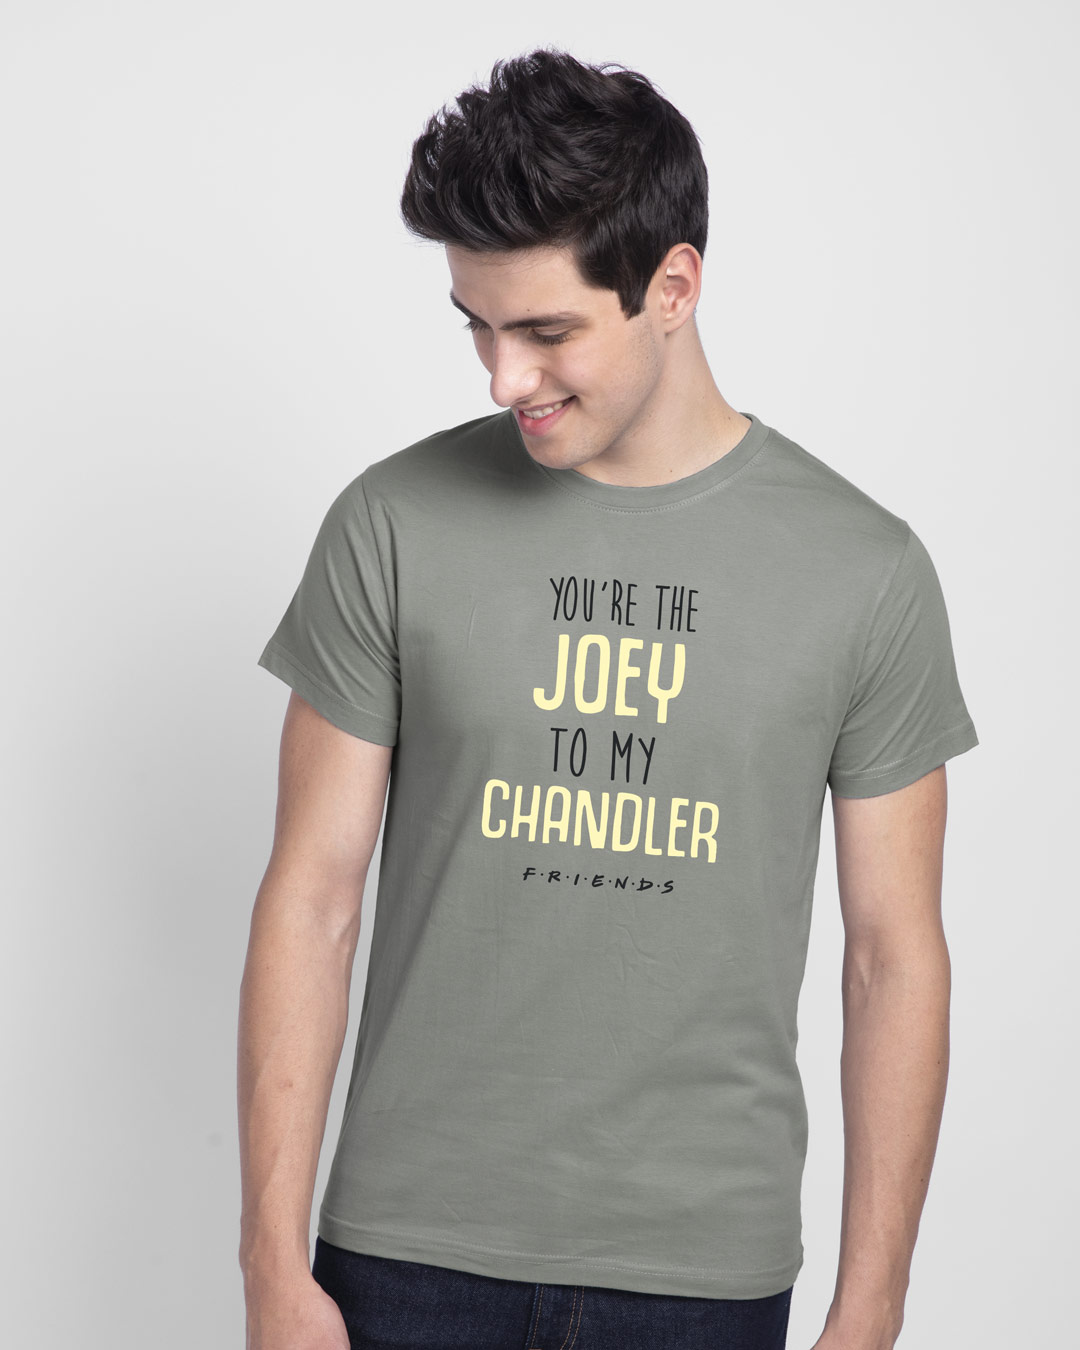 chandler t shirt